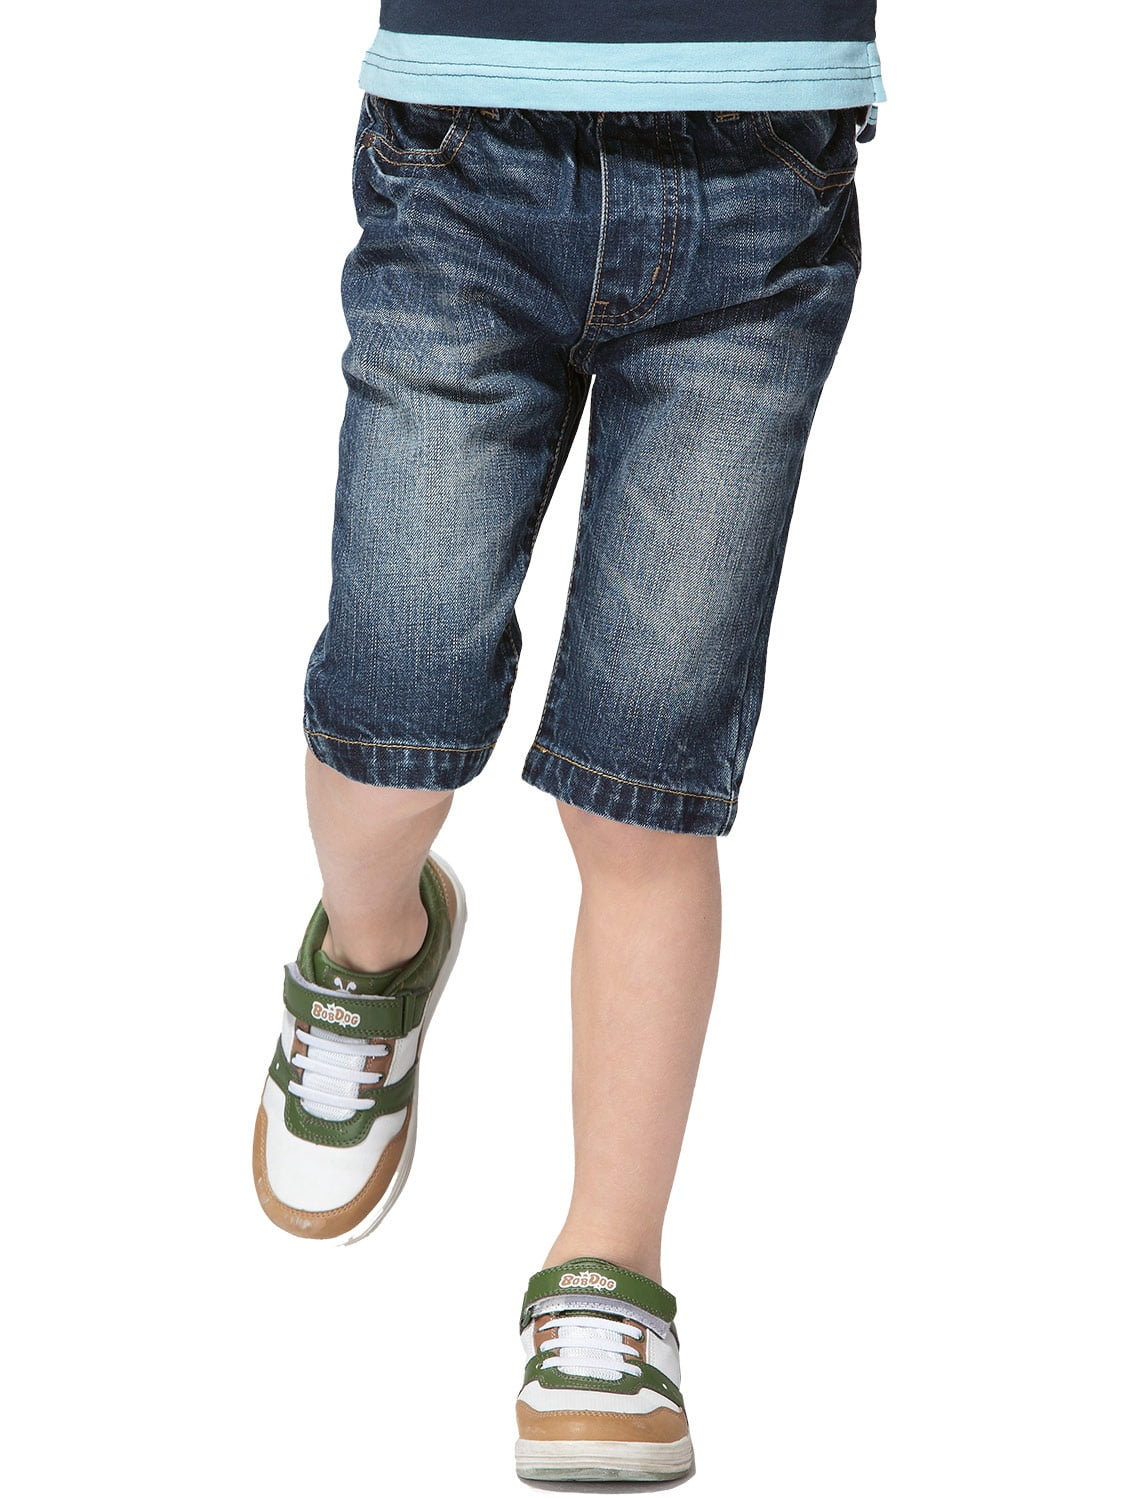 kids elastic waist jeans